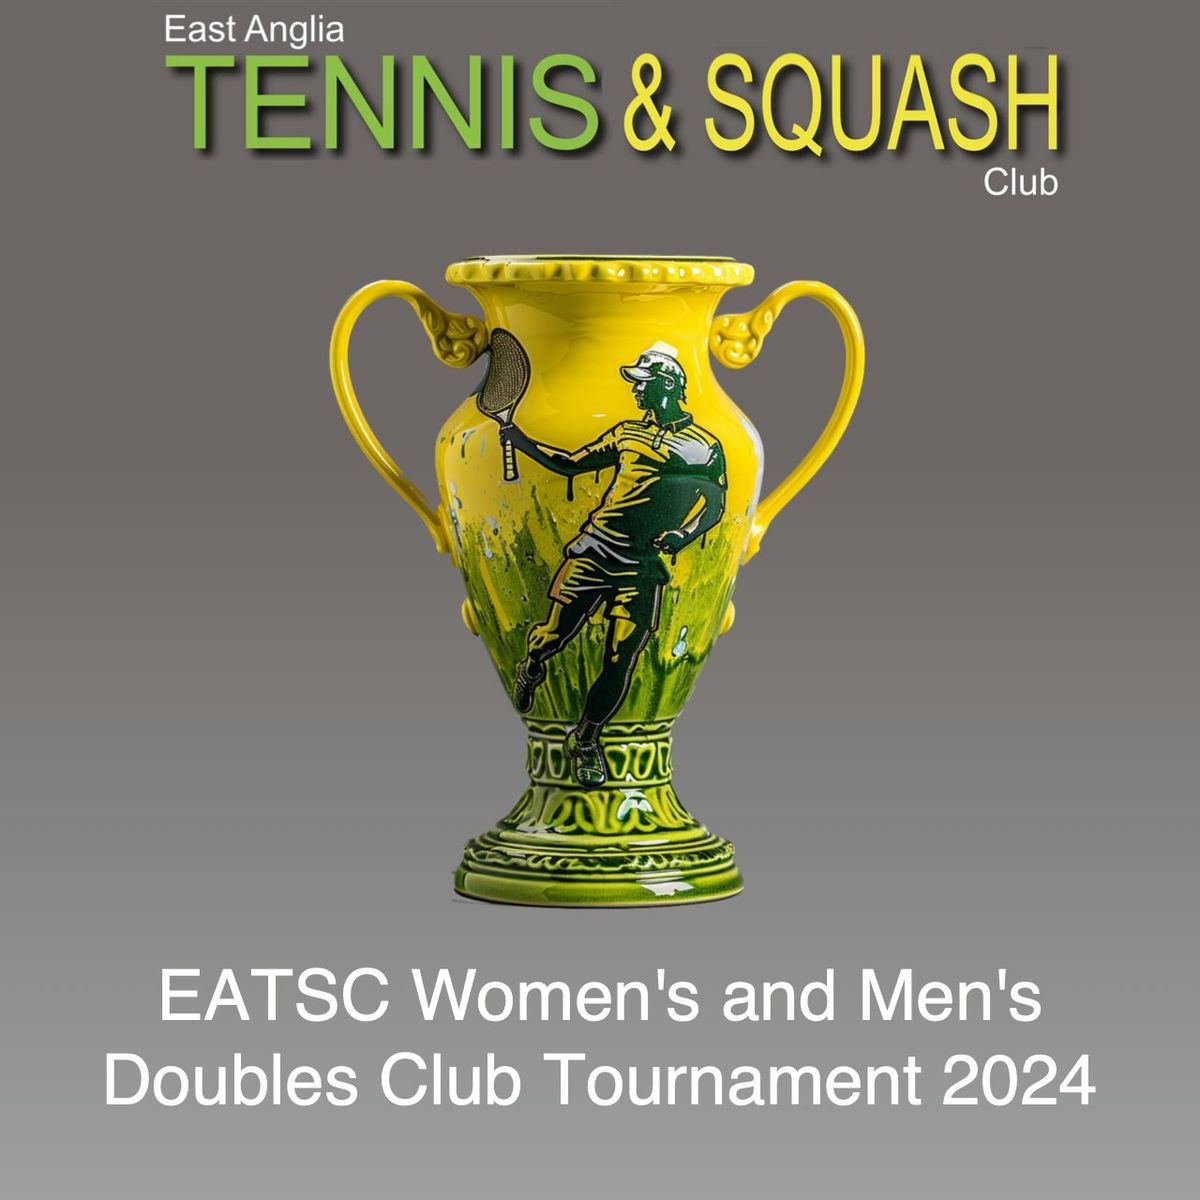 EATSC Women's and Men's Doubles Club Tournament 2024